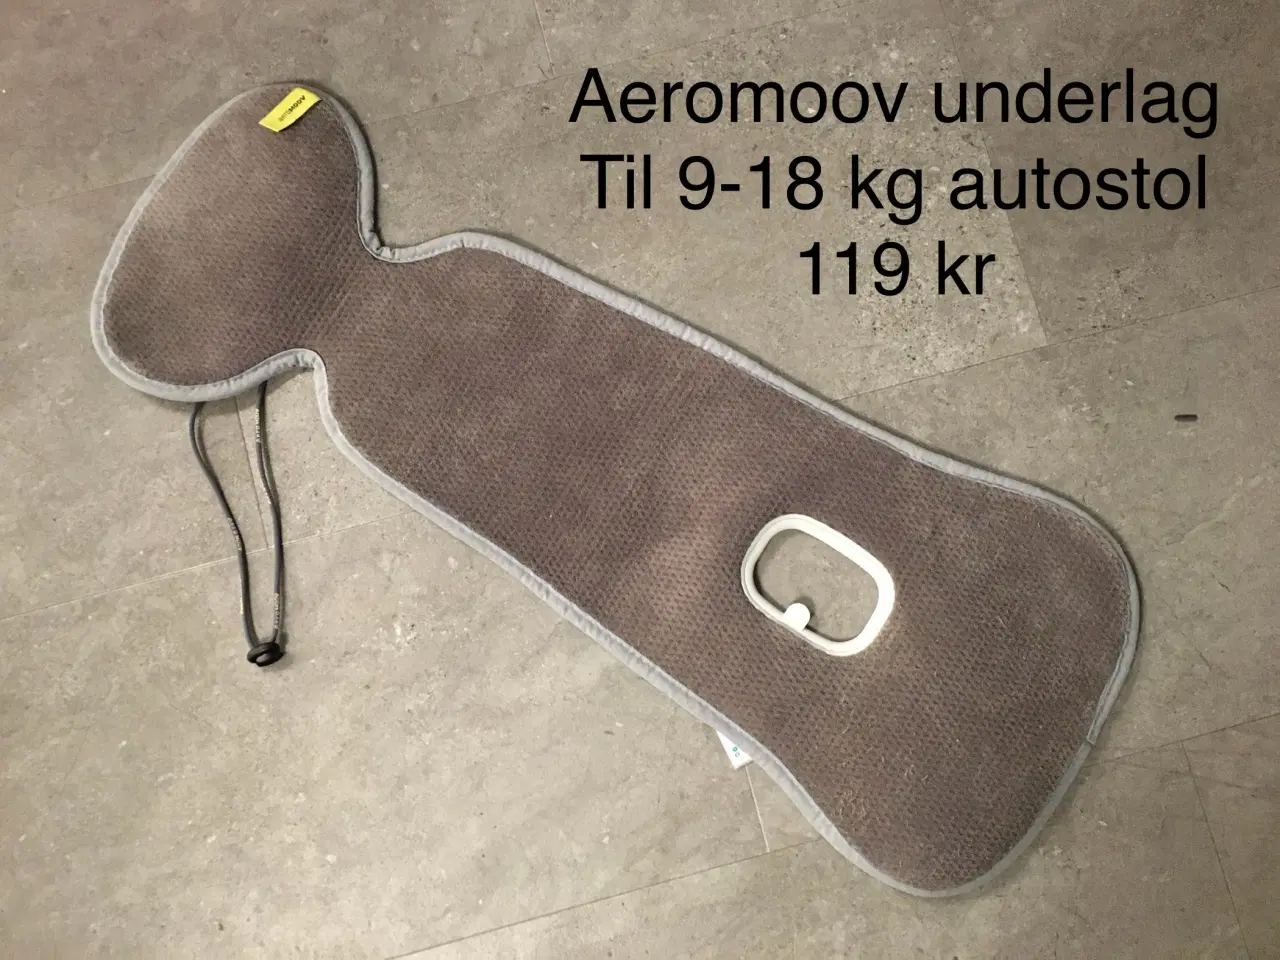 Billede 1 - Aeromoov underlag til autostol 119 kr